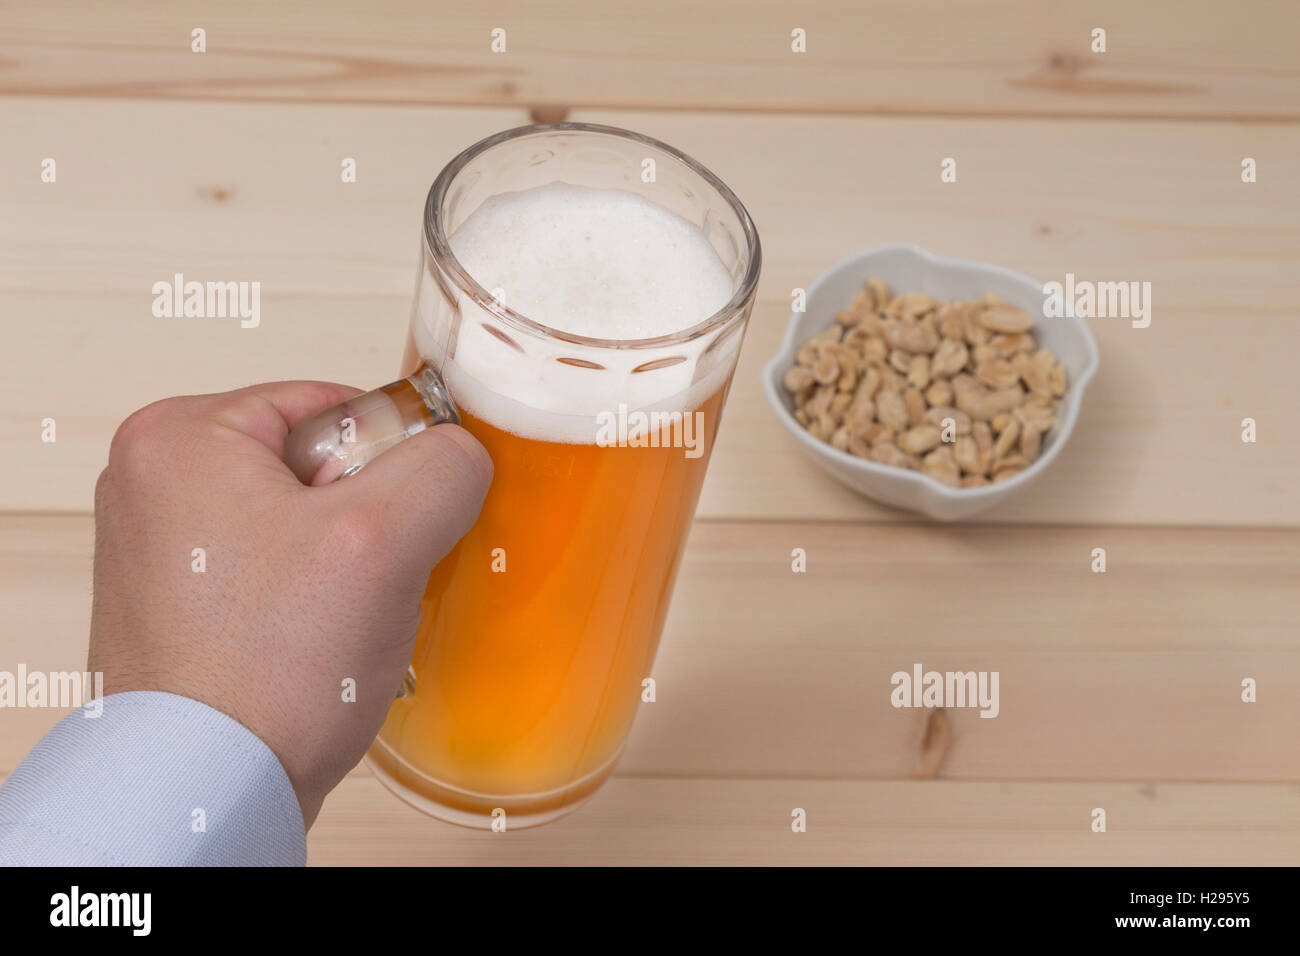 Männliche Hand hält einen Becher Bier vom Fass. Erdnüsse in der Schale auf den Tisch. Stockfoto